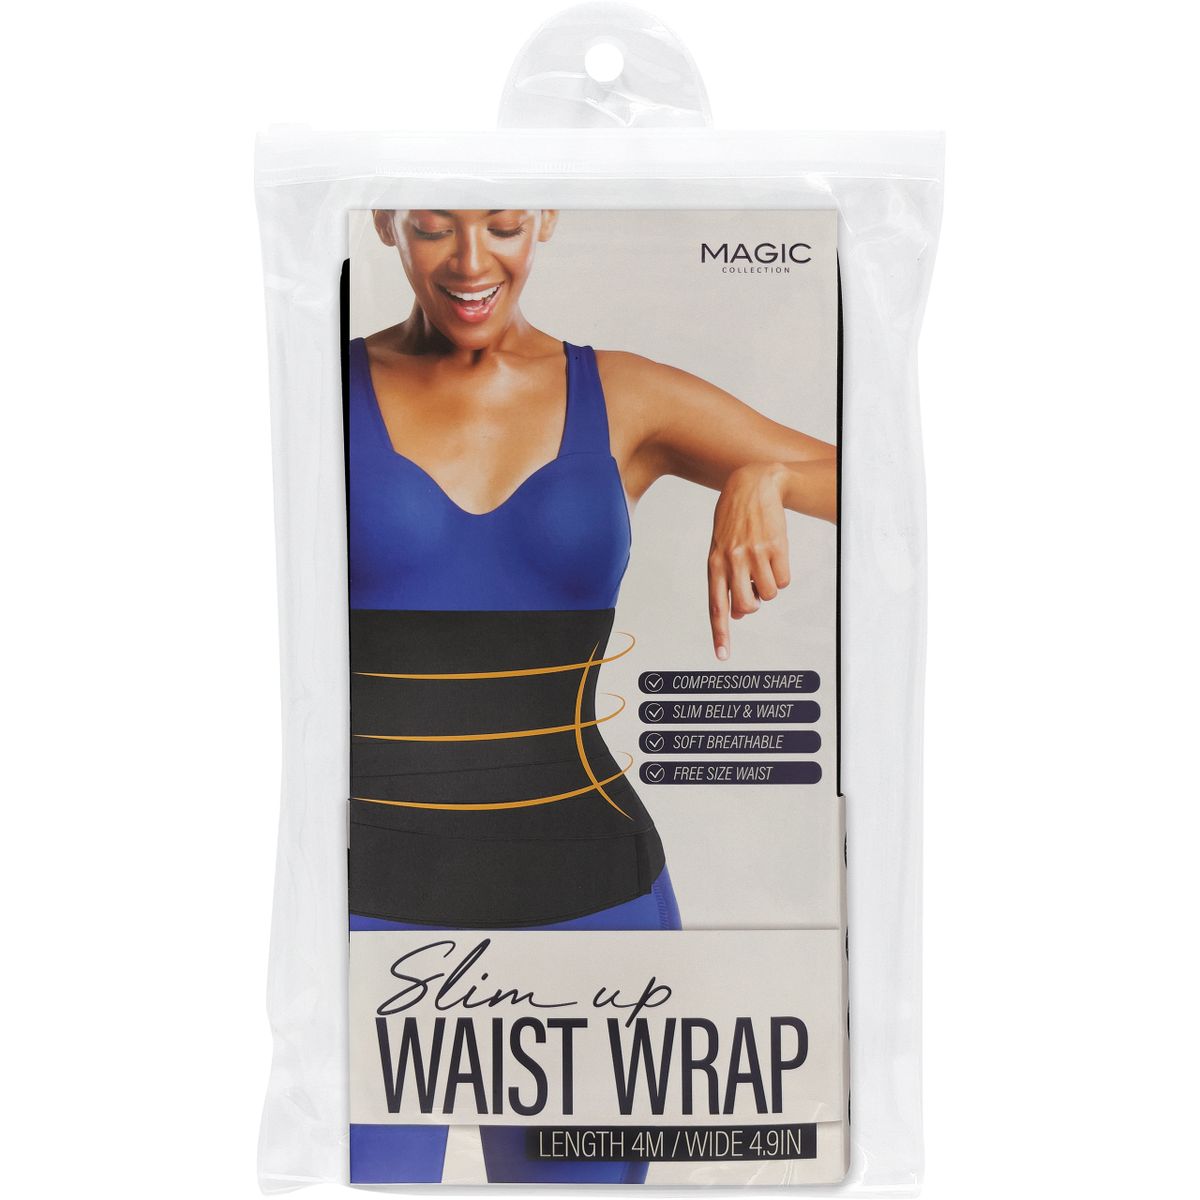 Slim Up Waist Wrap